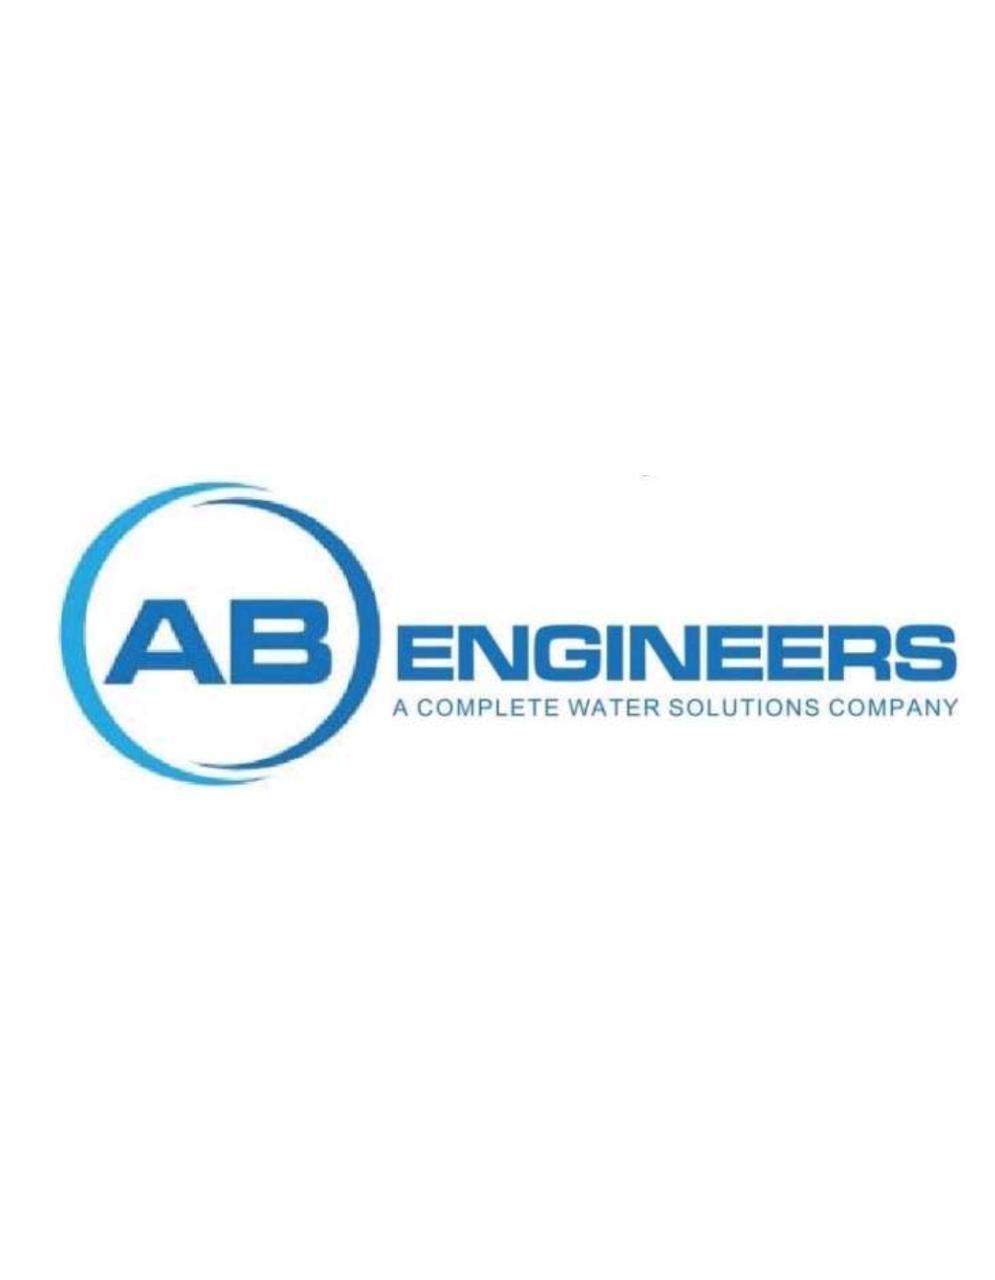 A.B. ENGINEERS